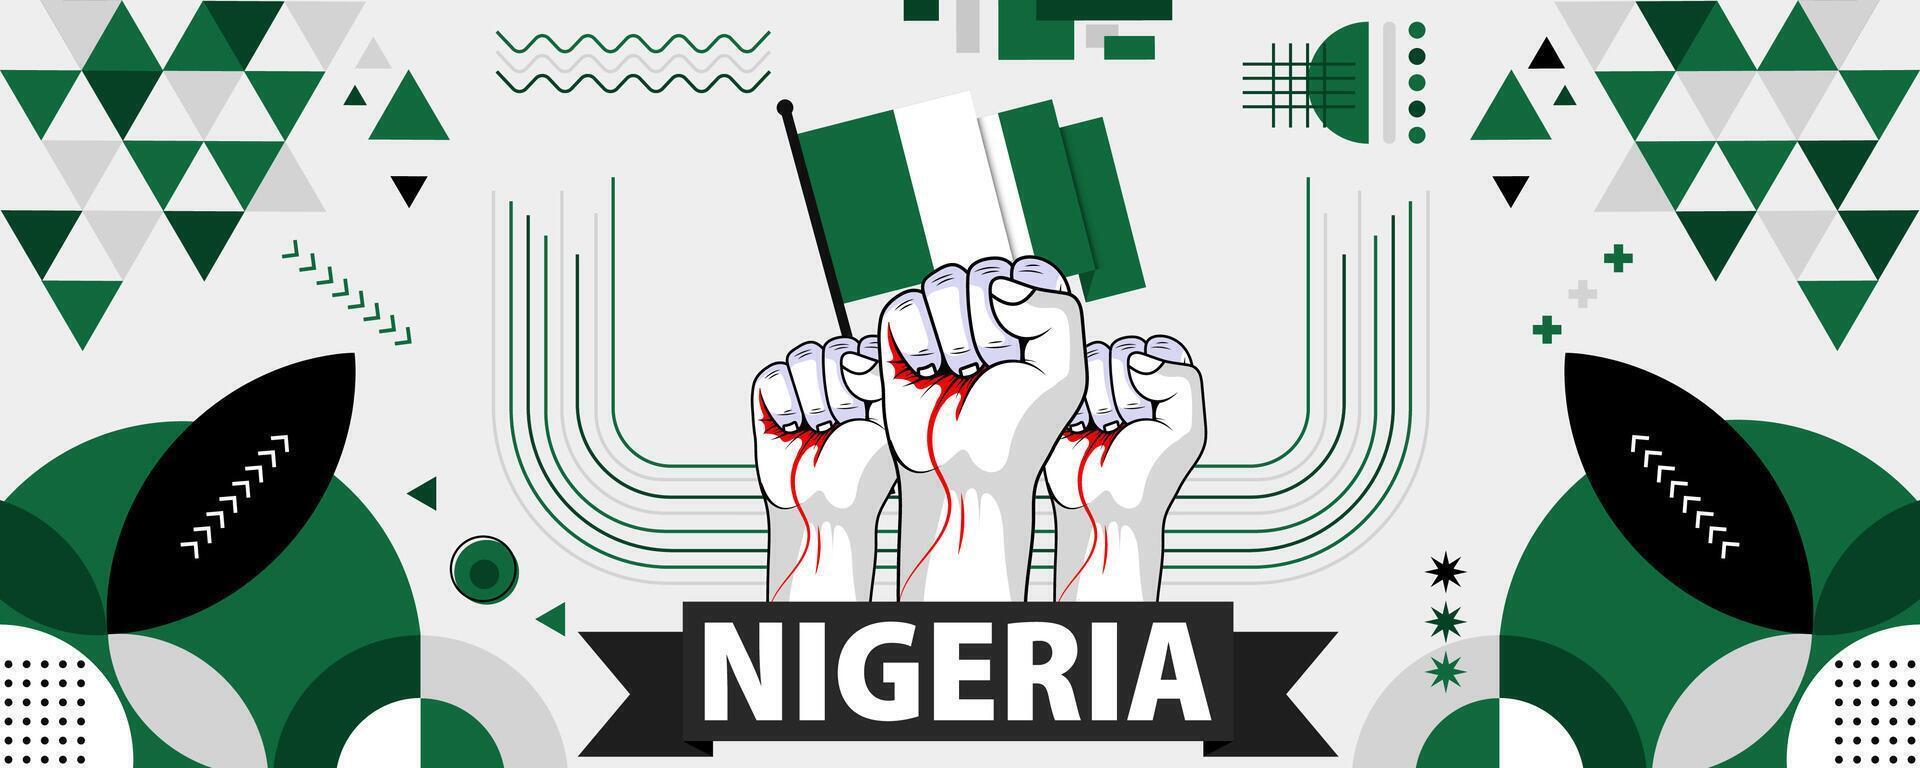 Nigeria nationaal of onafhankelijkheid dag banier voor land viering. vlag van Nigeria met verheven vuisten. modern retro ontwerp met typorgaphy abstract meetkundig pictogrammen. vector illustratie.